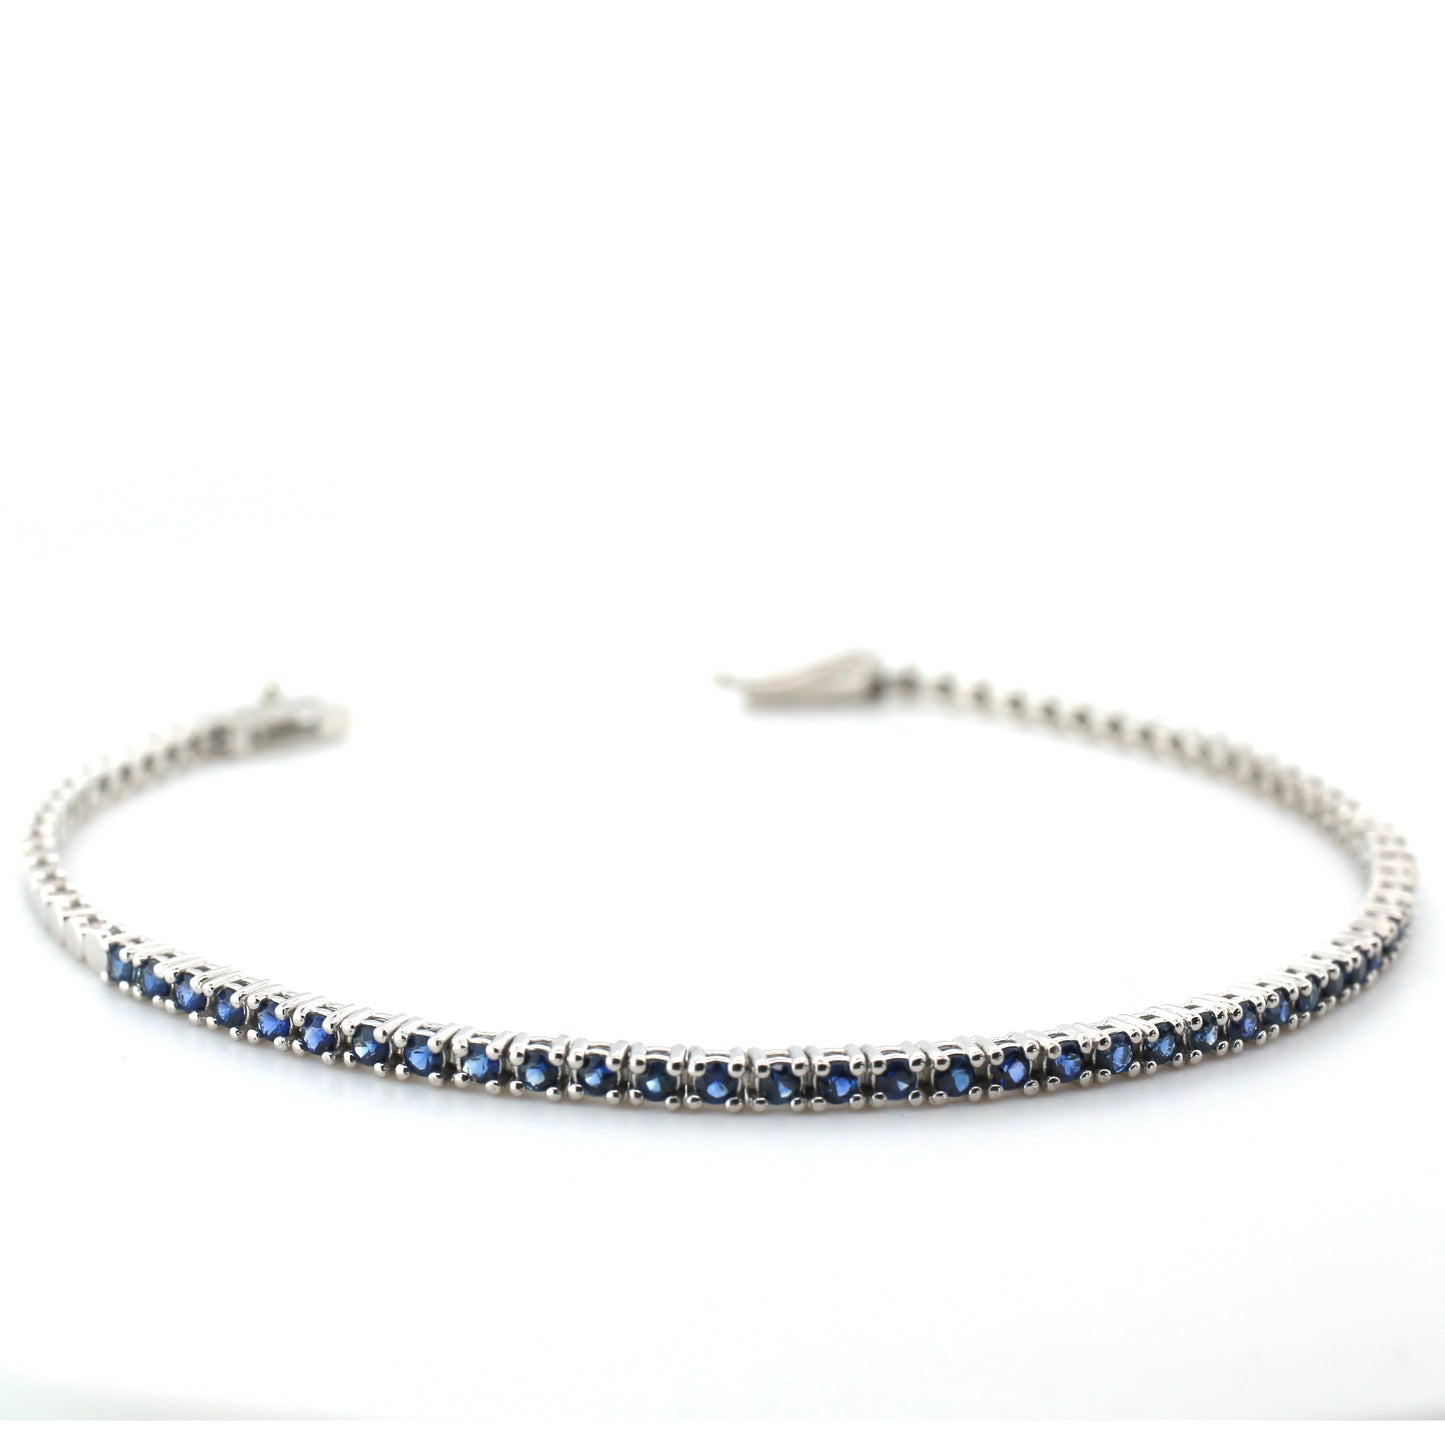 Blue Sapphire Bracelet - 18K White Gold  6.05 gm